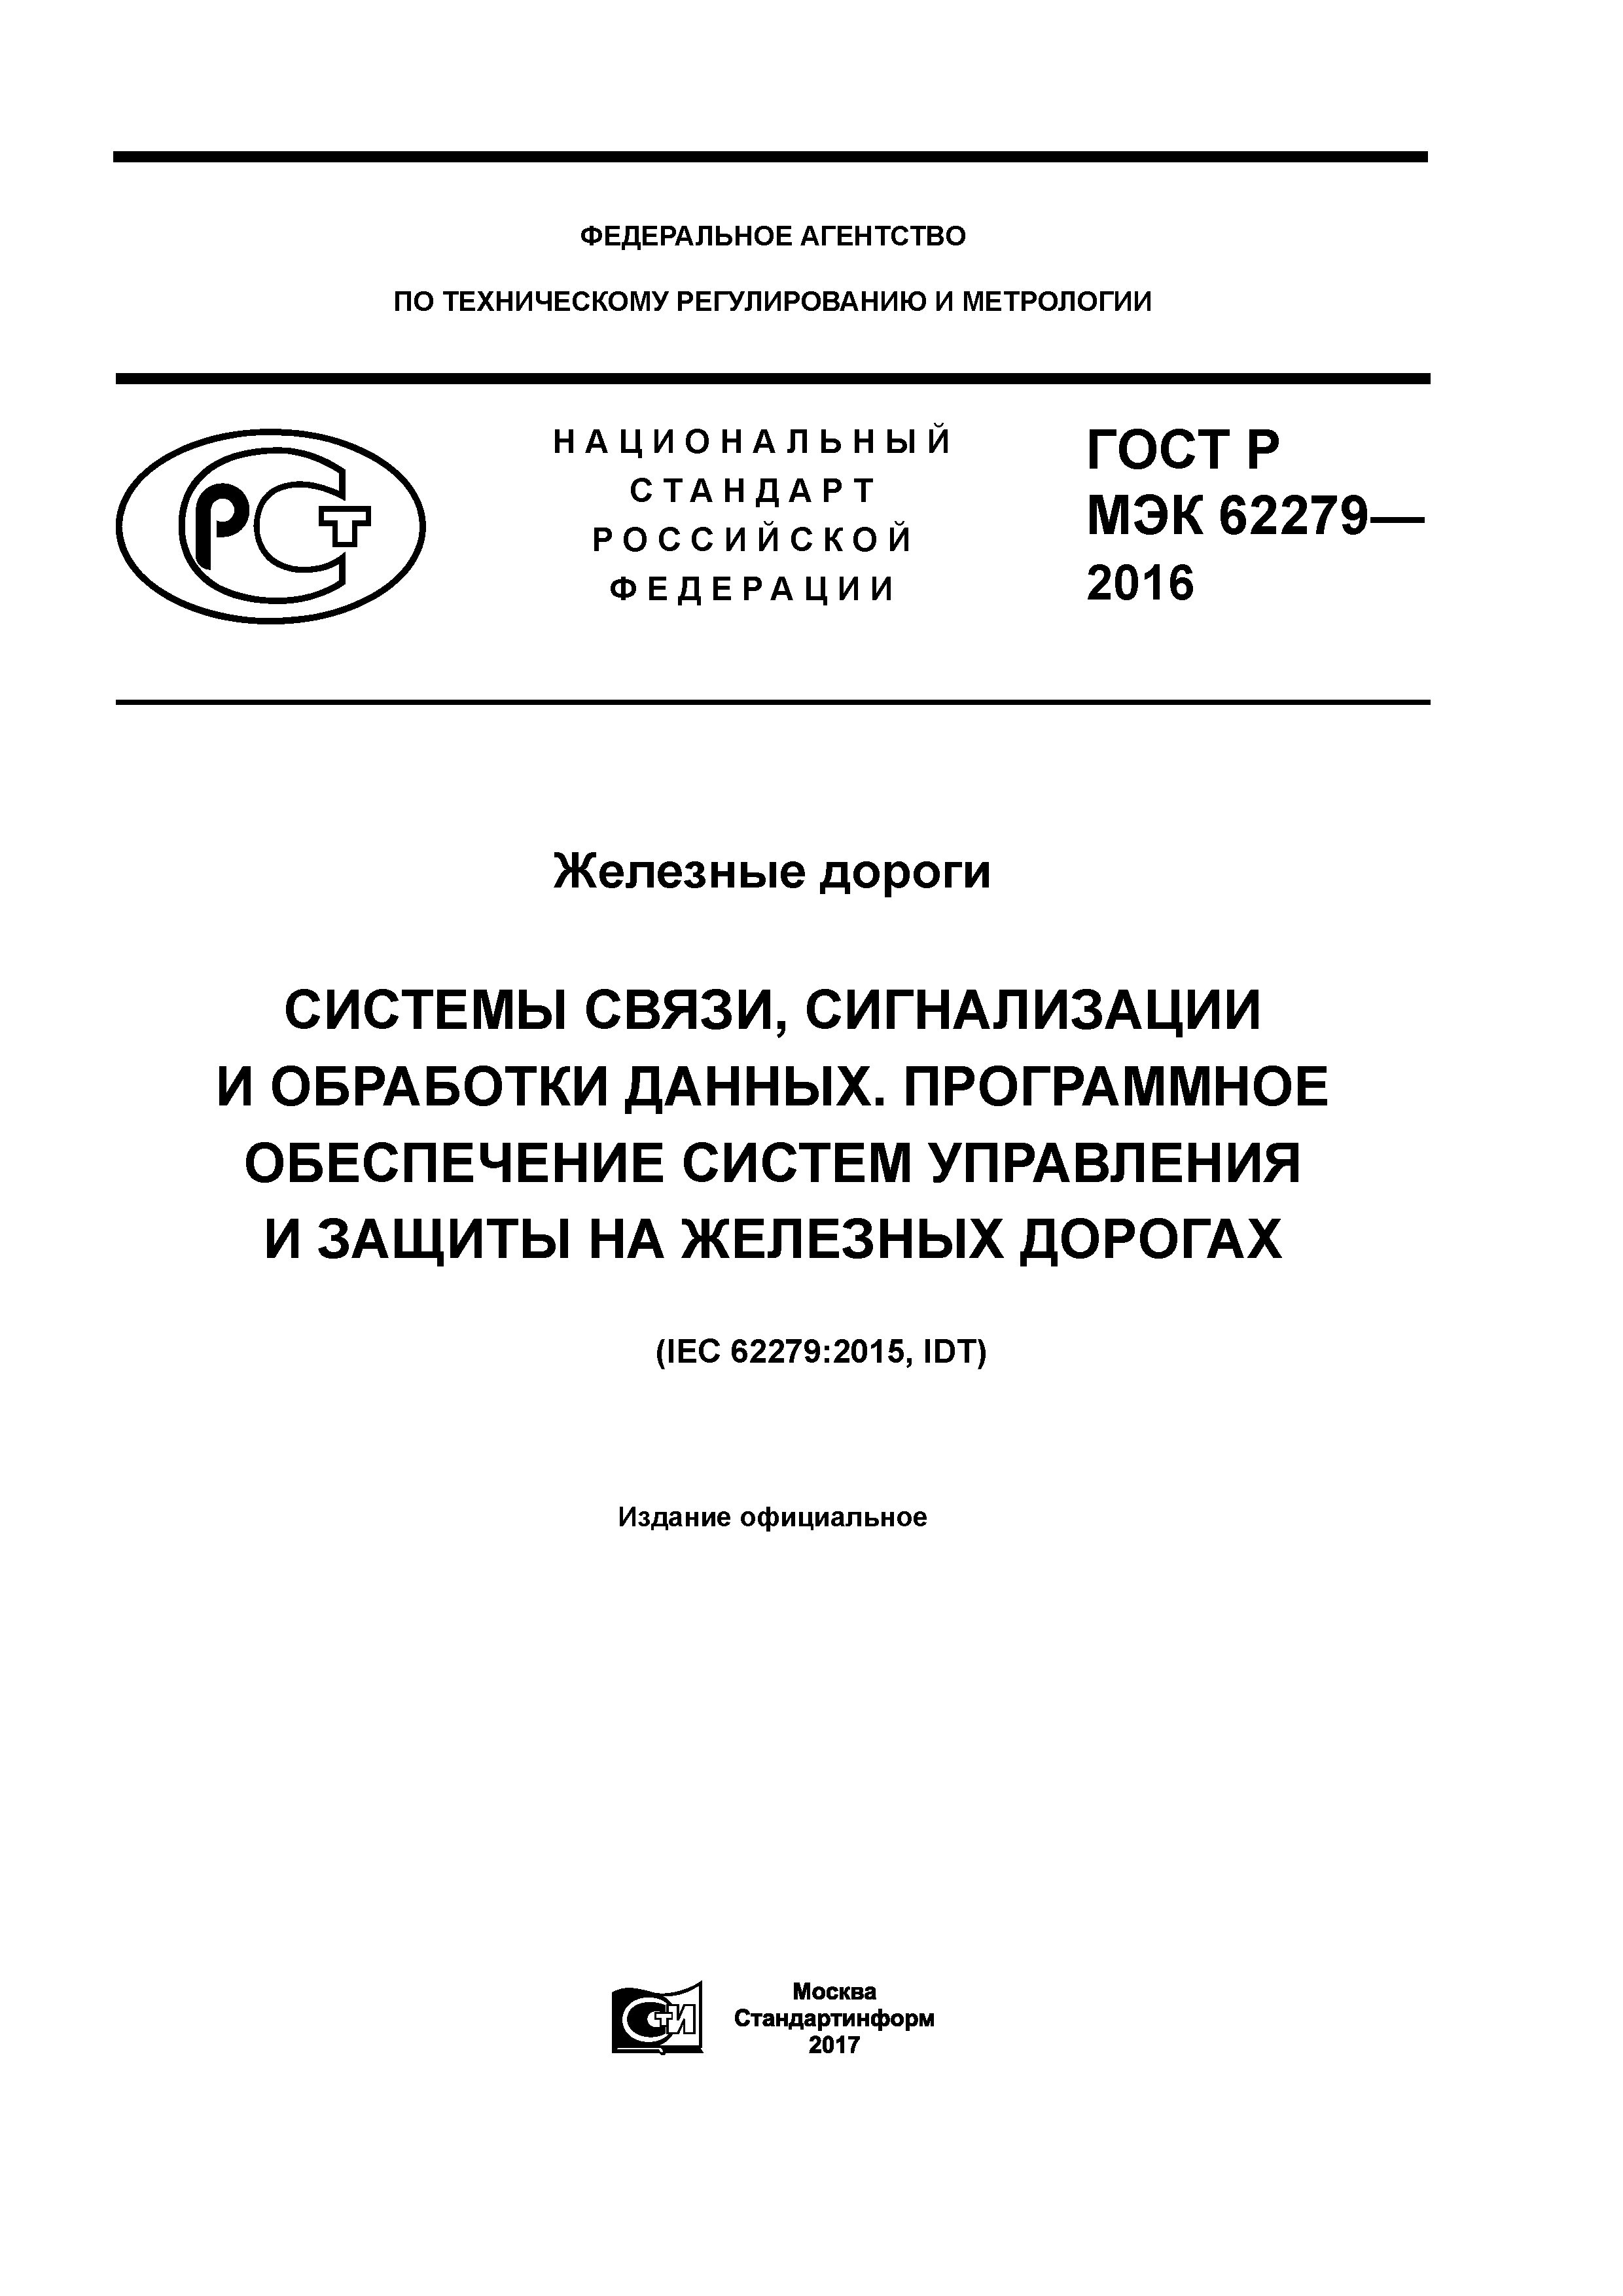 ГОСТ Р МЭК 62279-2016